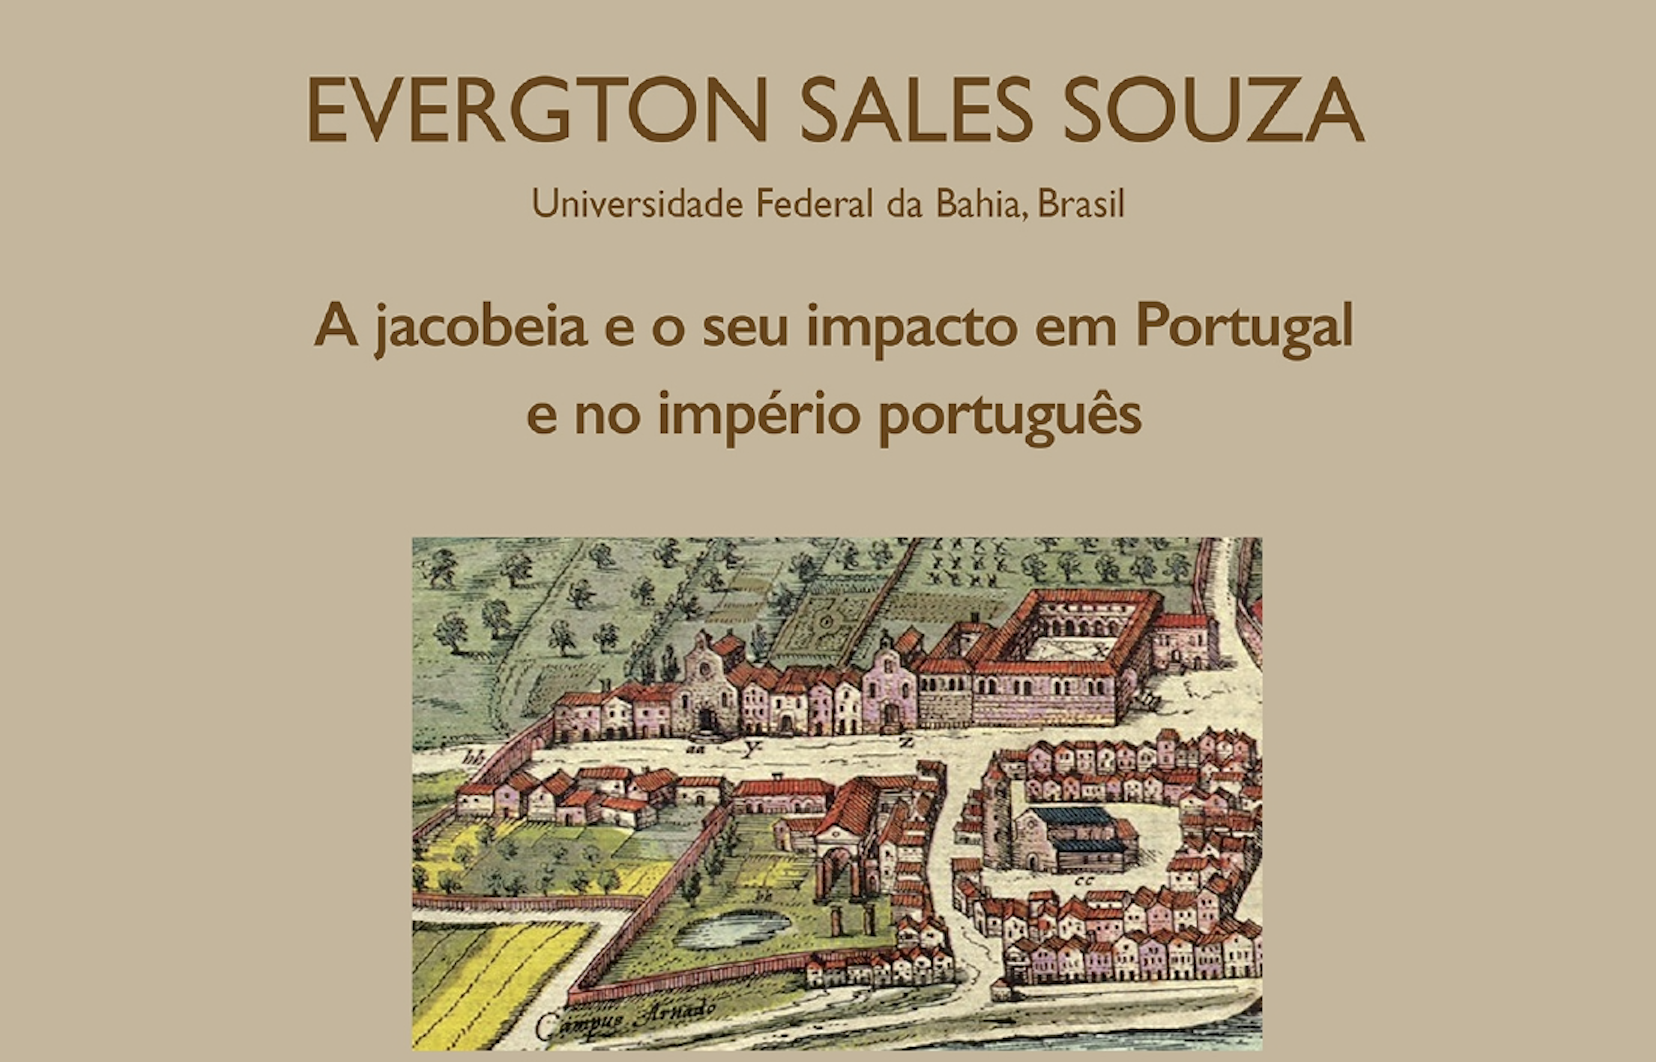 Conferência por Evergton Sales Souza: A jacobeia e o seu impacto em Portugal e no império português